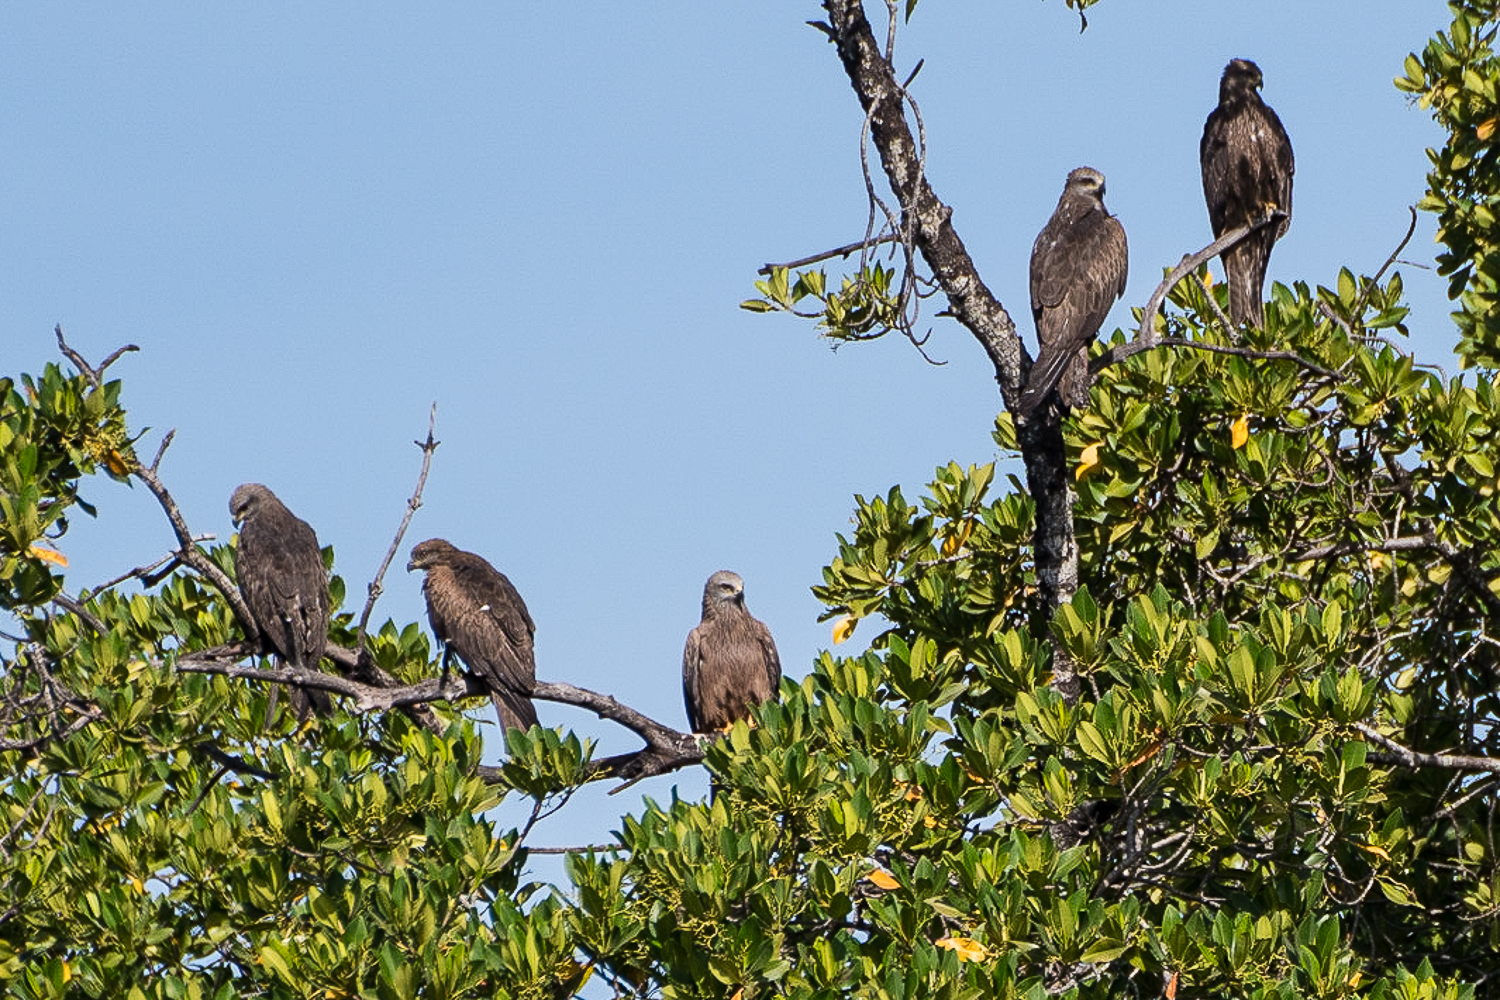 Le Milan noir (Black Kite, Milvus migrans), ici 5 individus perchés sur la mangrove, est une silhouette familière au dessus de la lagune, tout autant qu’au dessus  du village de la Somone et de sa brousse.